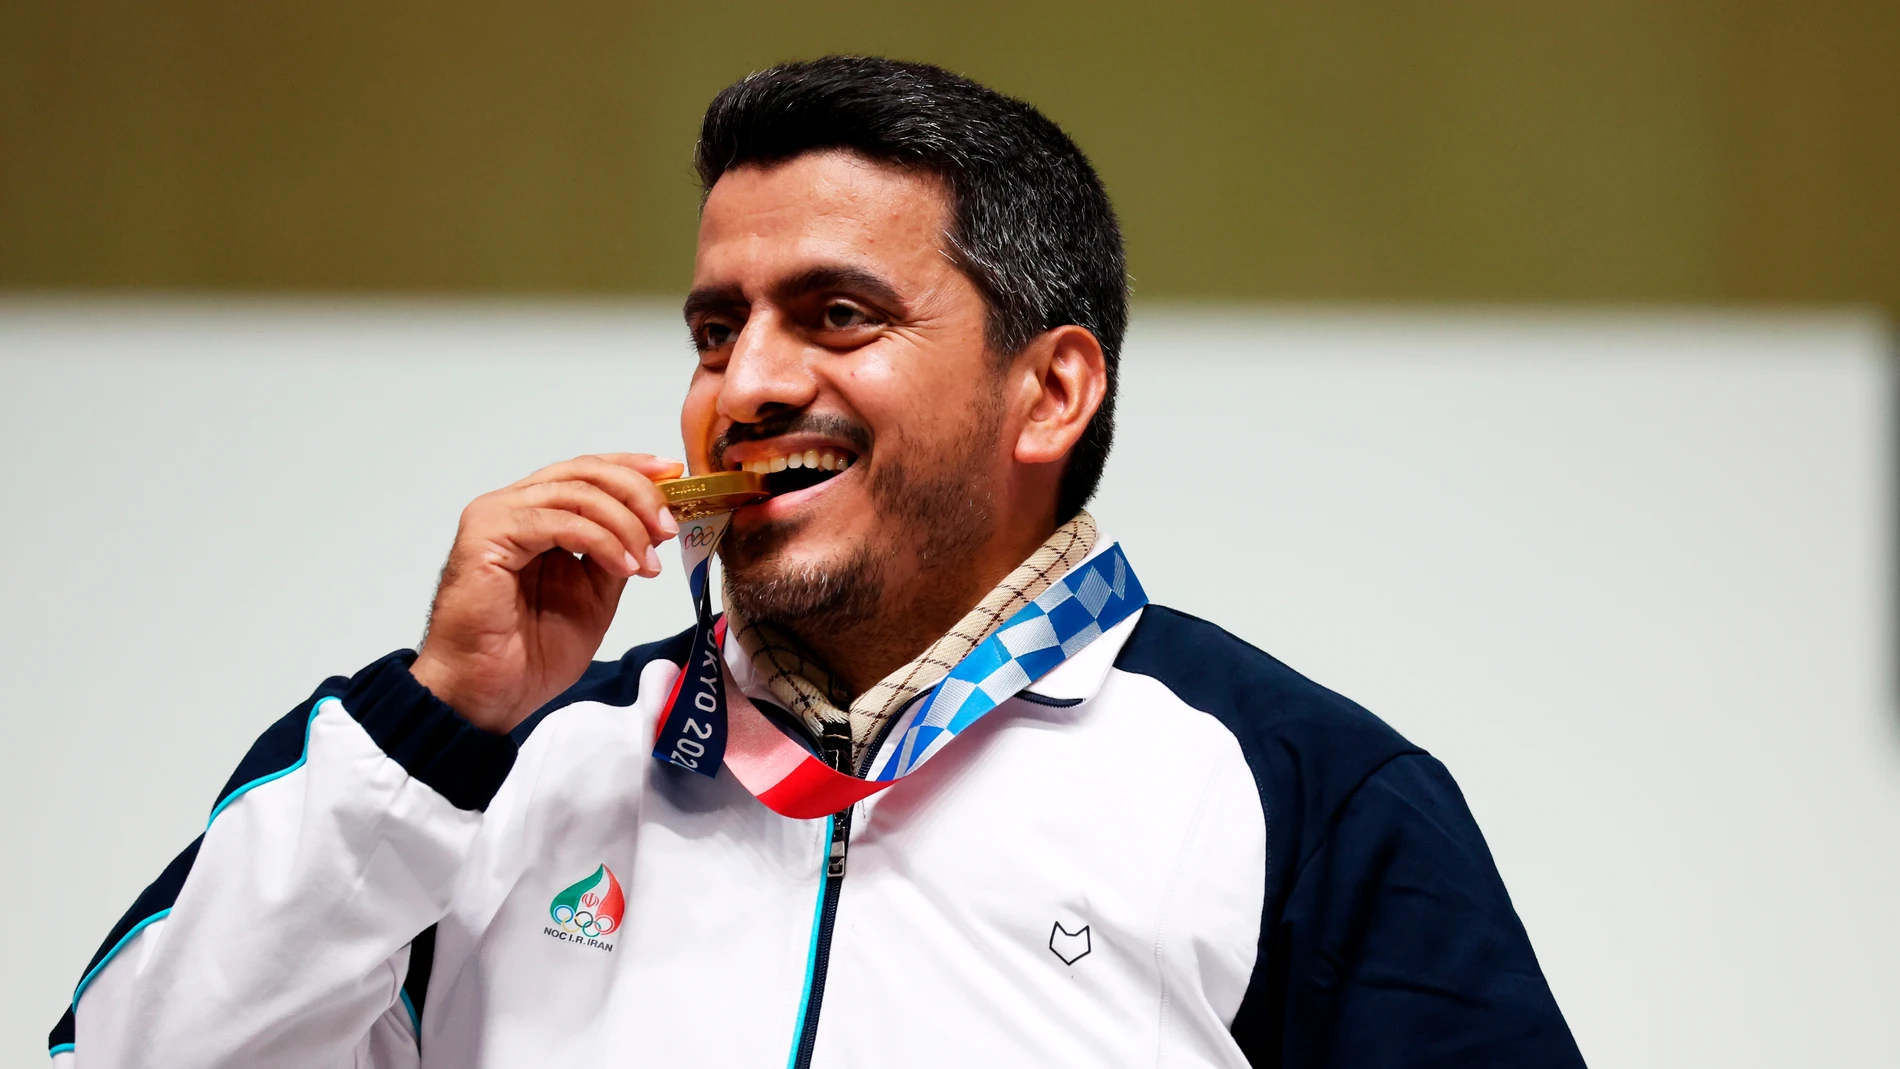 Javad Foroughi muerde la medalla de oro lograda en Tokio 2020